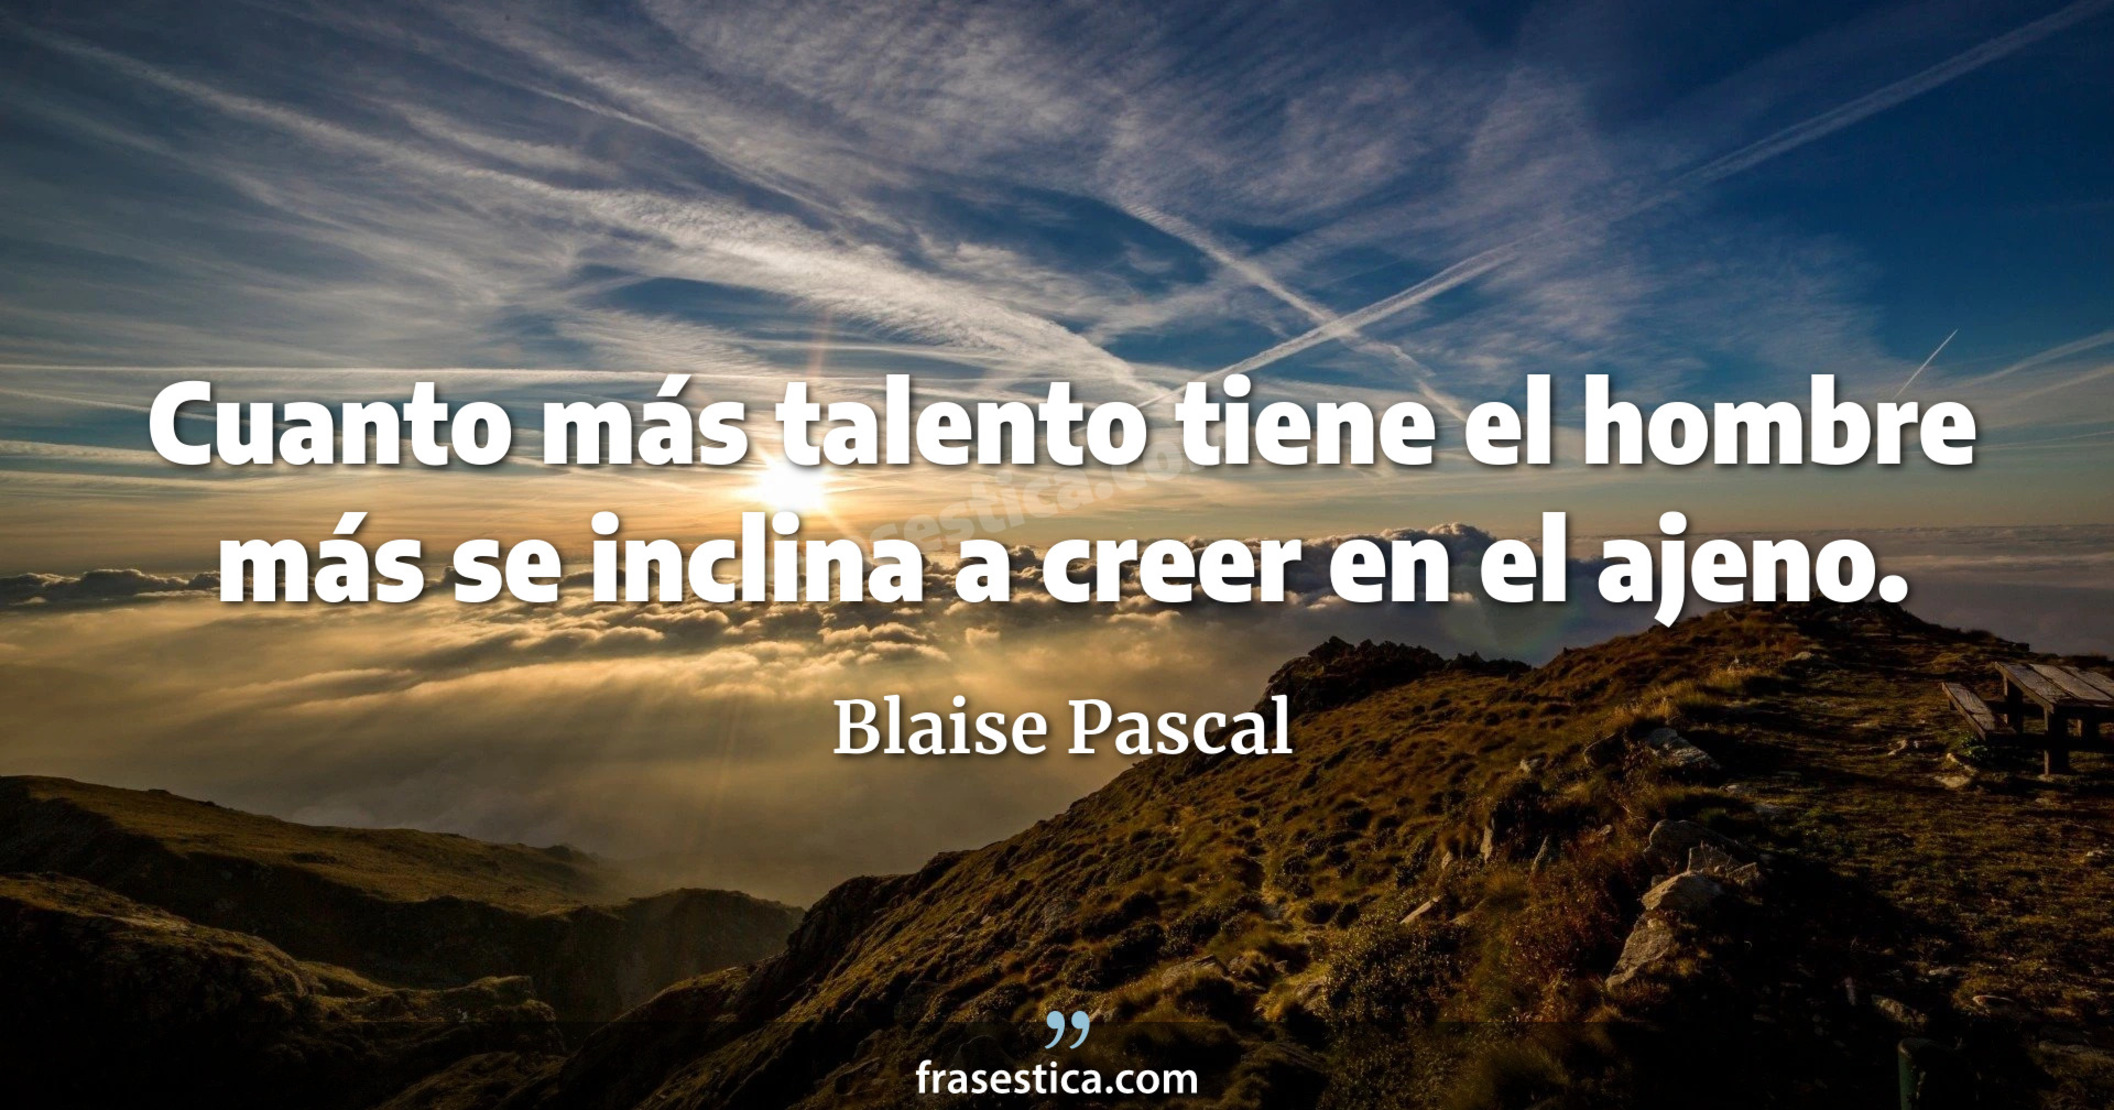 Cuanto más talento tiene el hombre más se inclina a creer en el ajeno. - Blaise Pascal